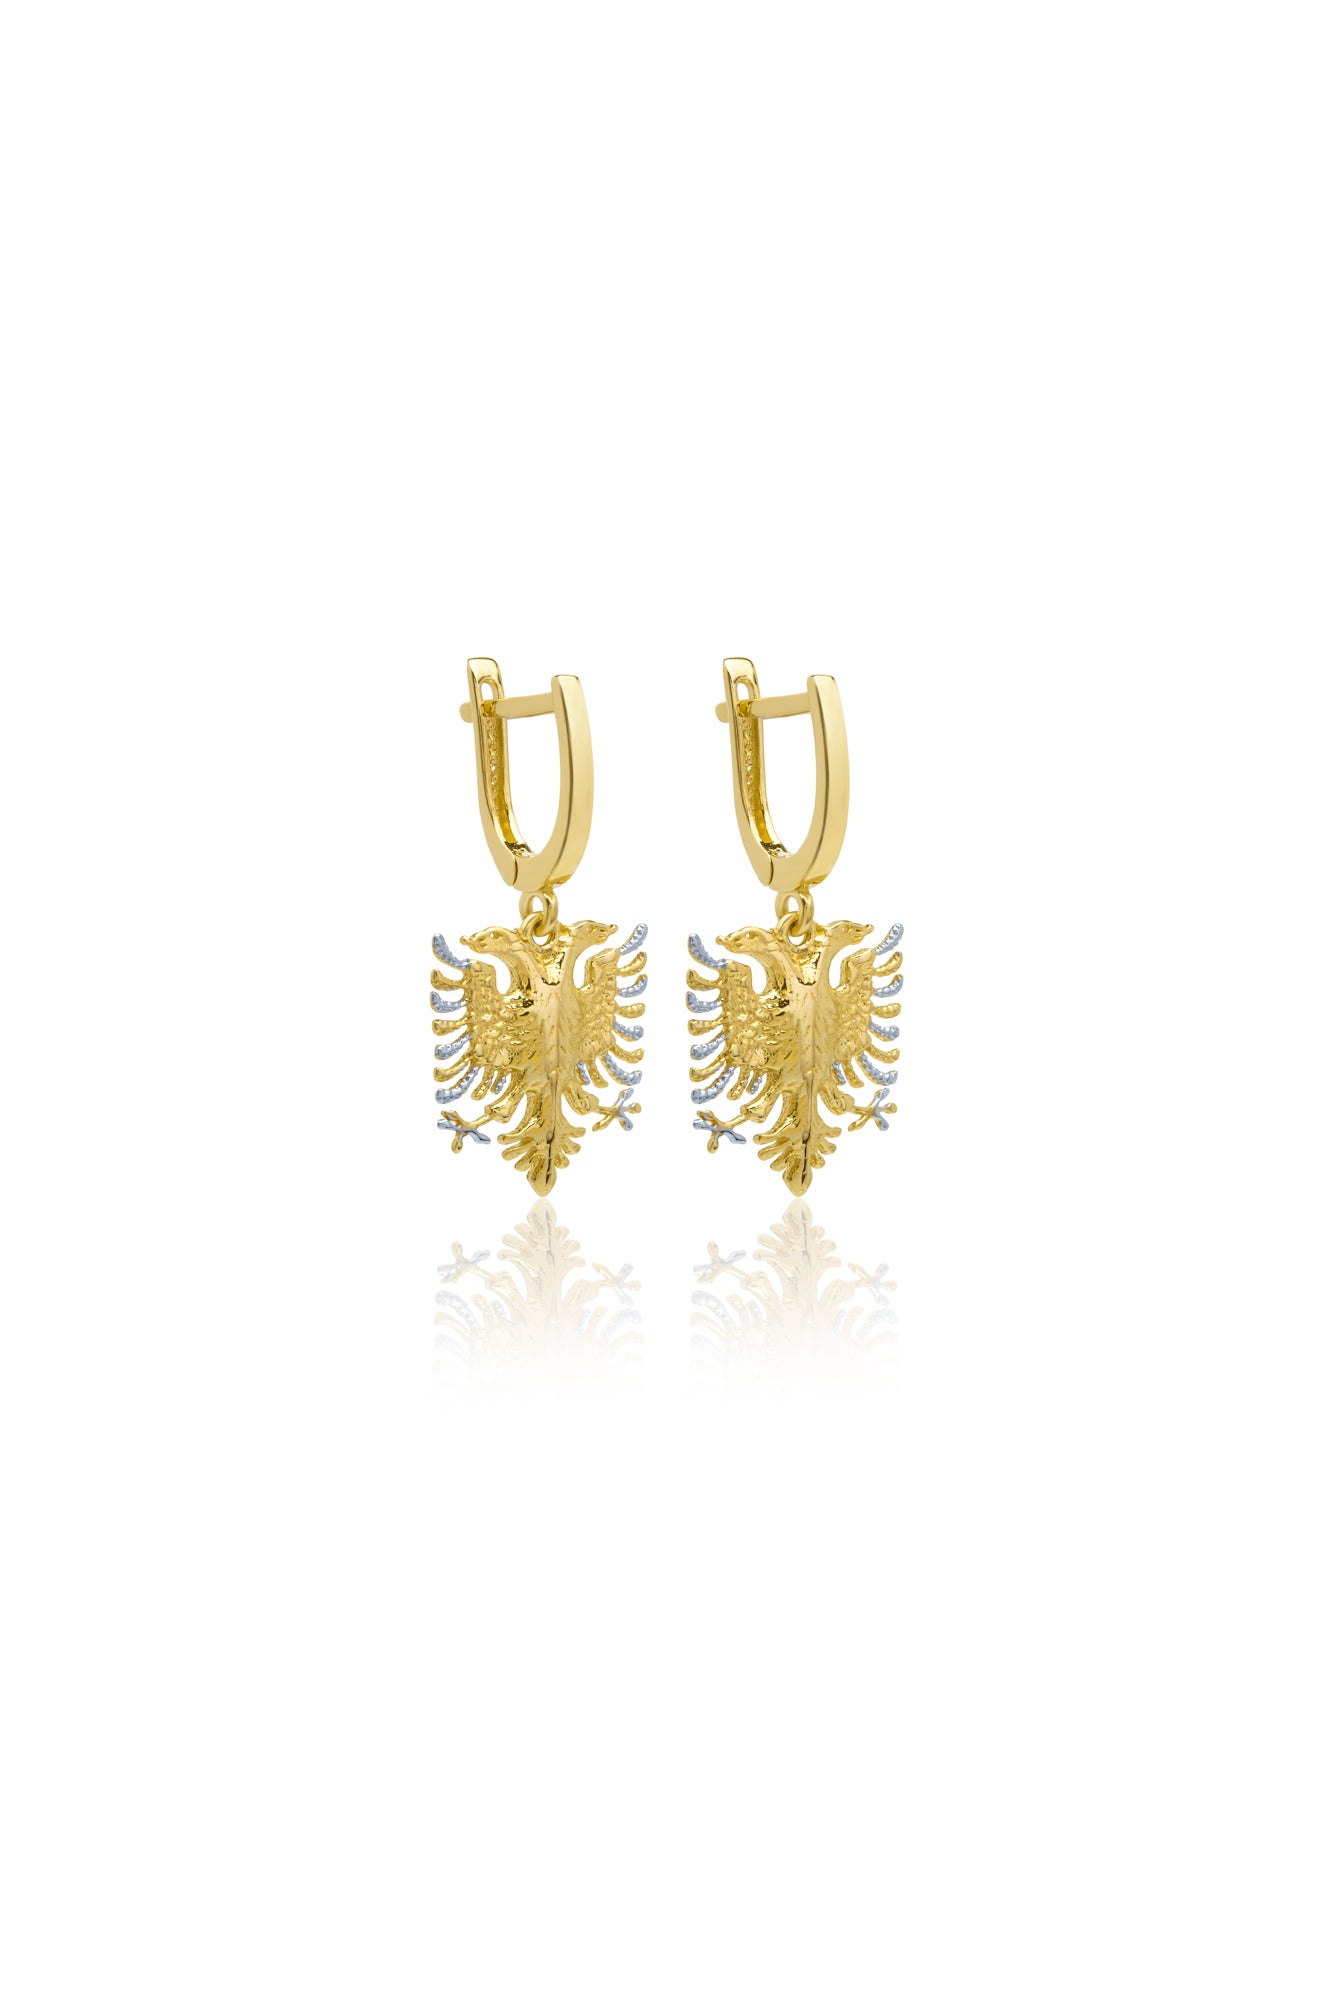 Golden Era Earrings - Serma International